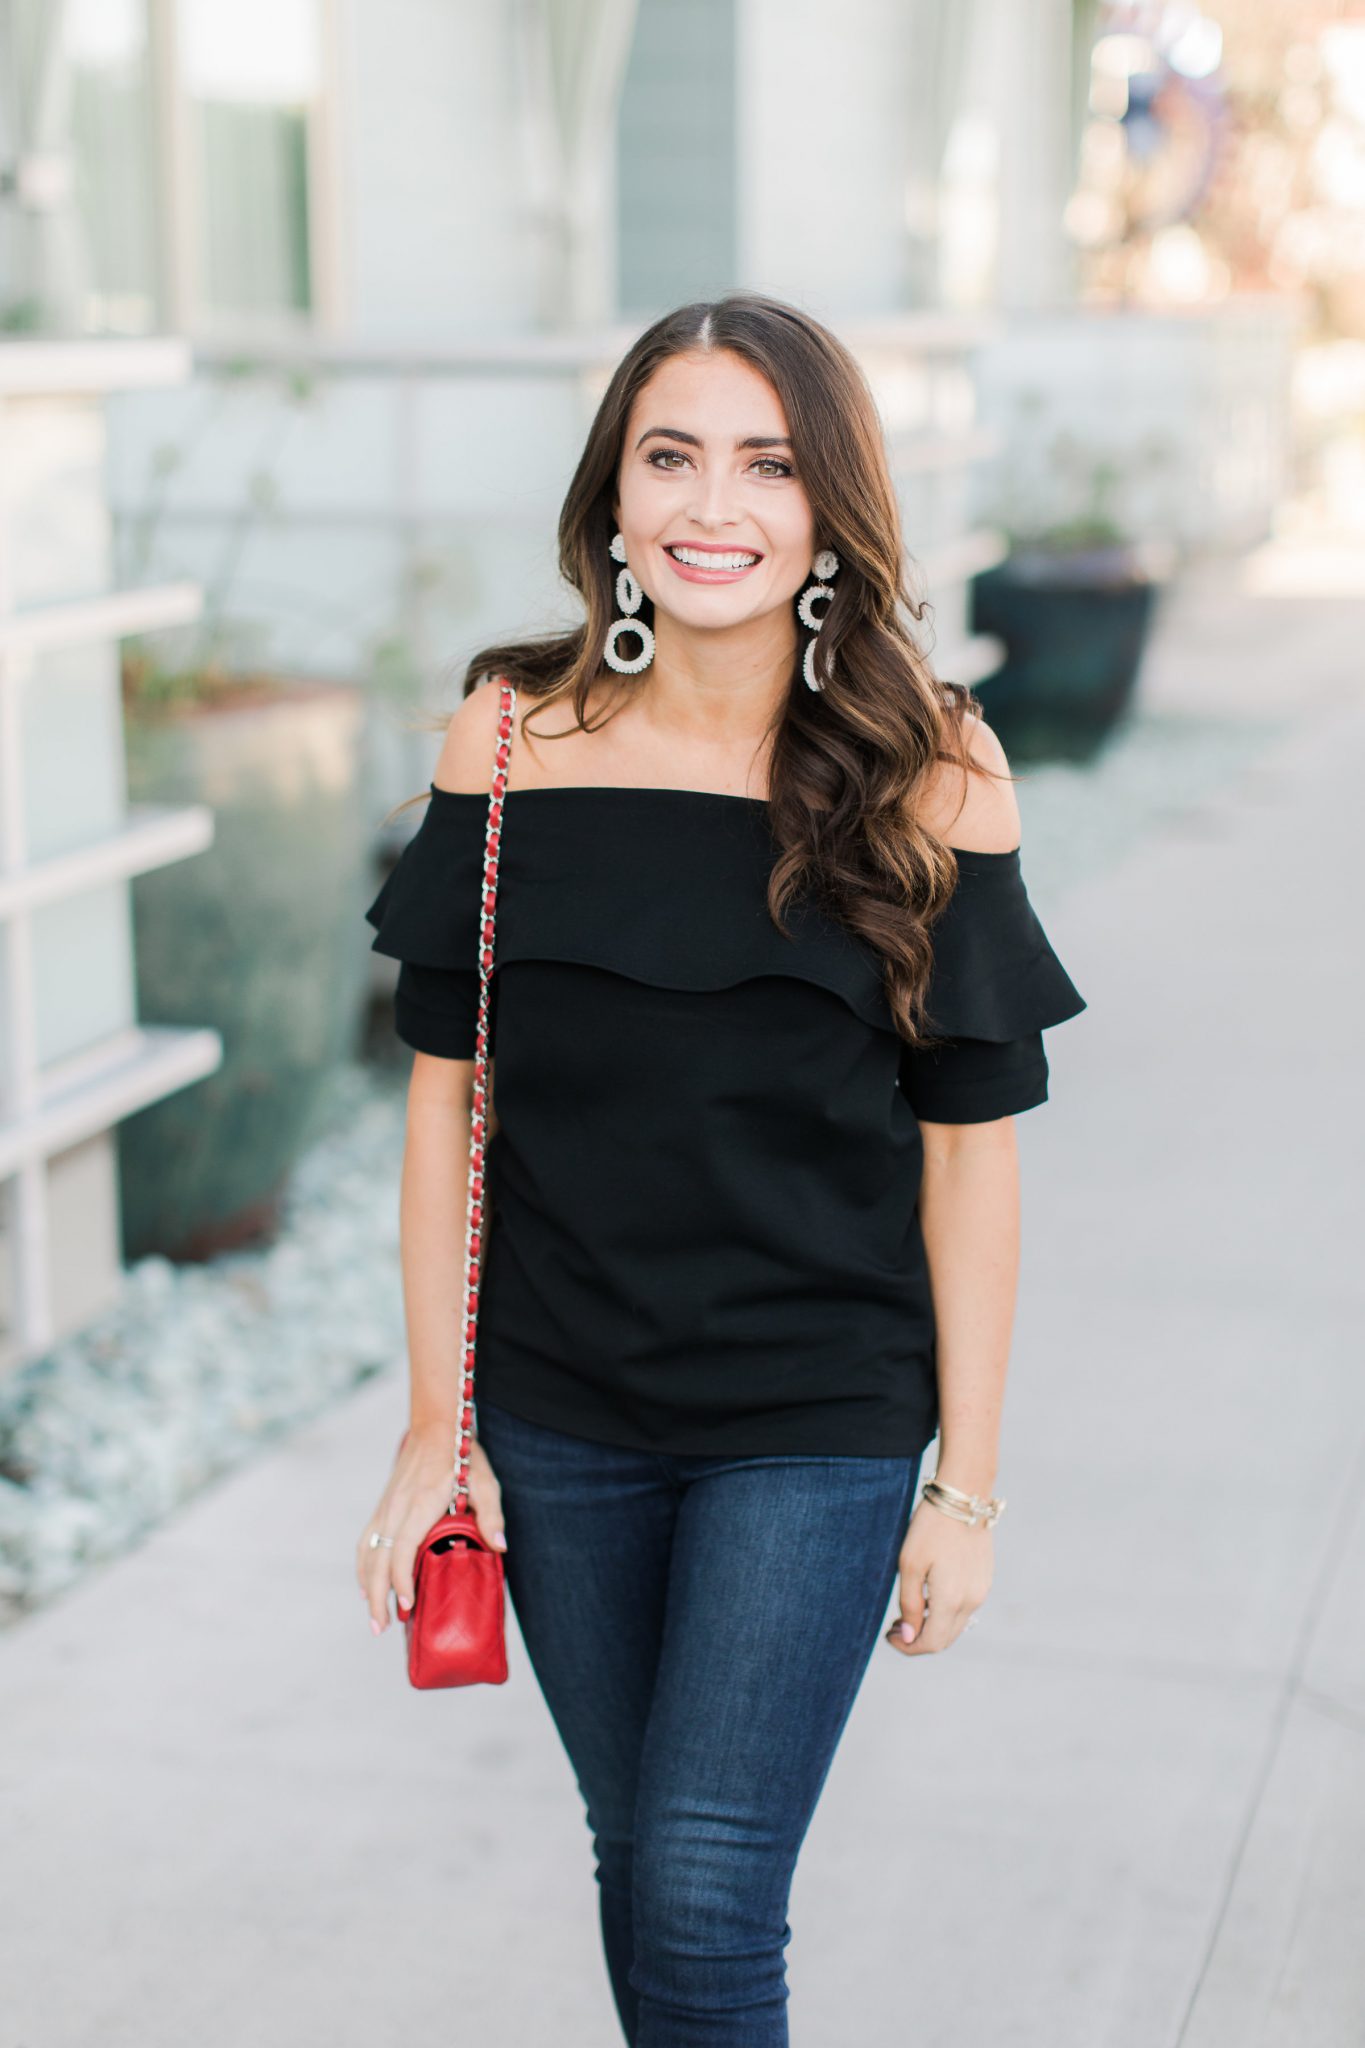 popular Orange County fashion blogger, Maxie Elise